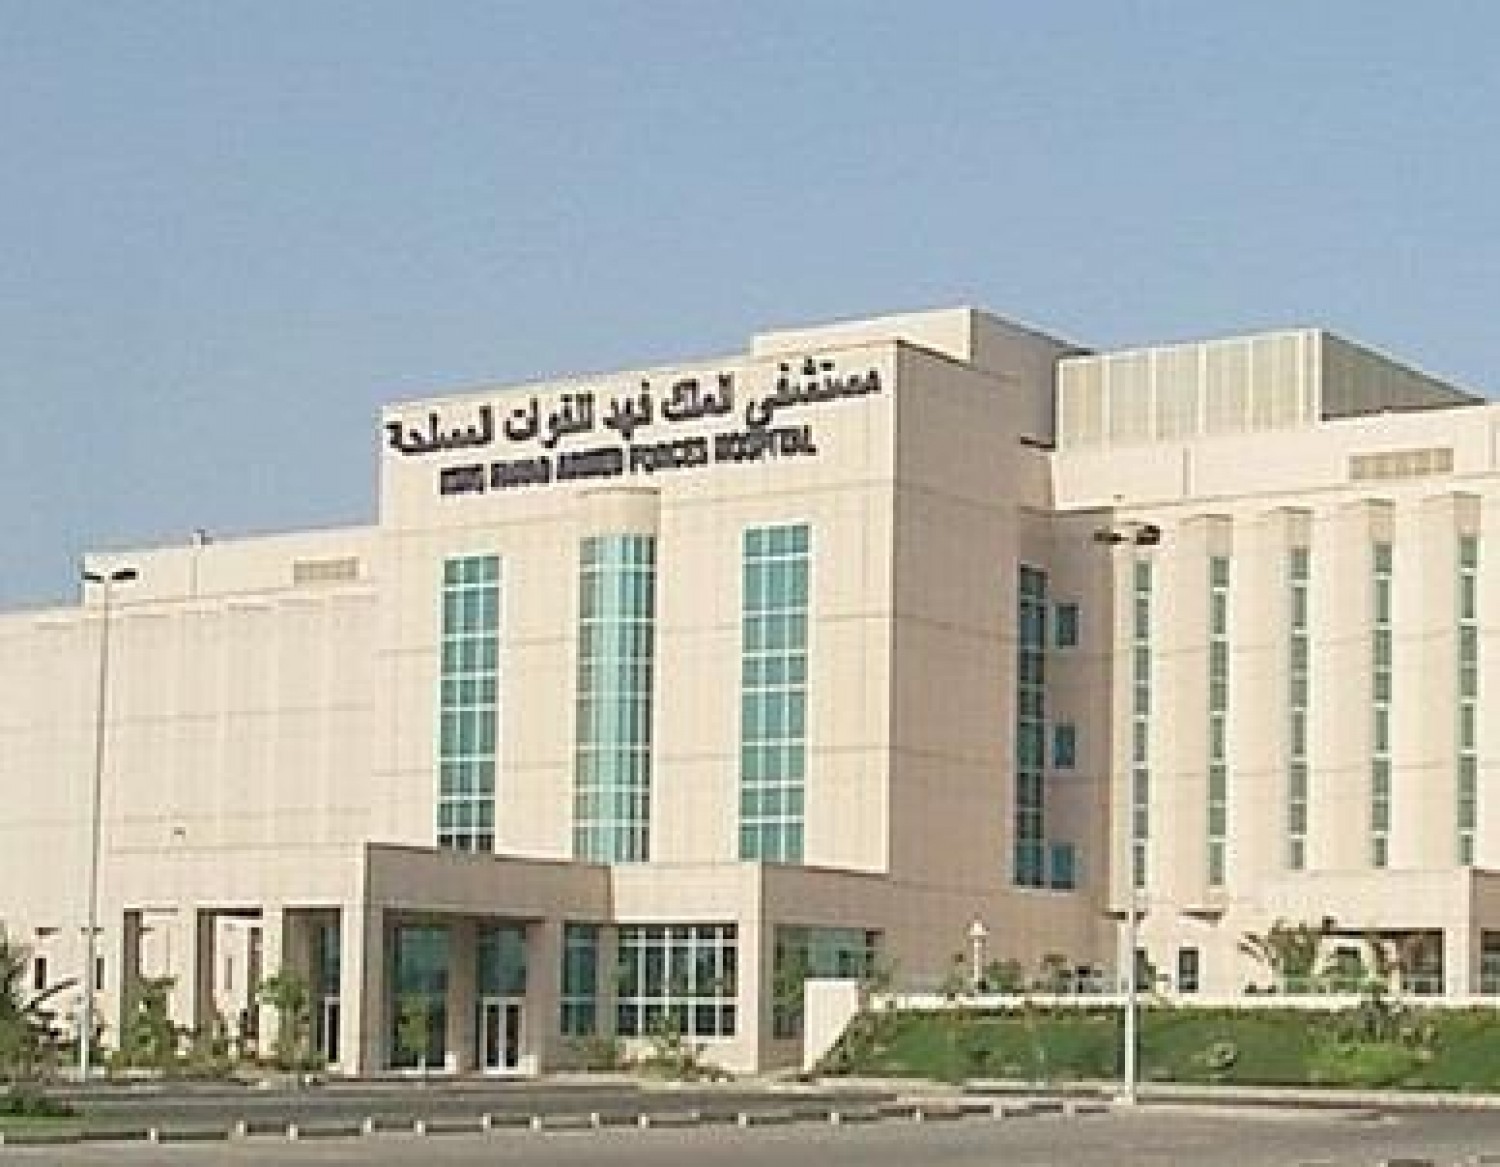 مستشفى الملك فهد للقوات المسلحة في جدة يعلن عن توفر وظائف شاغرة ومتنوعة